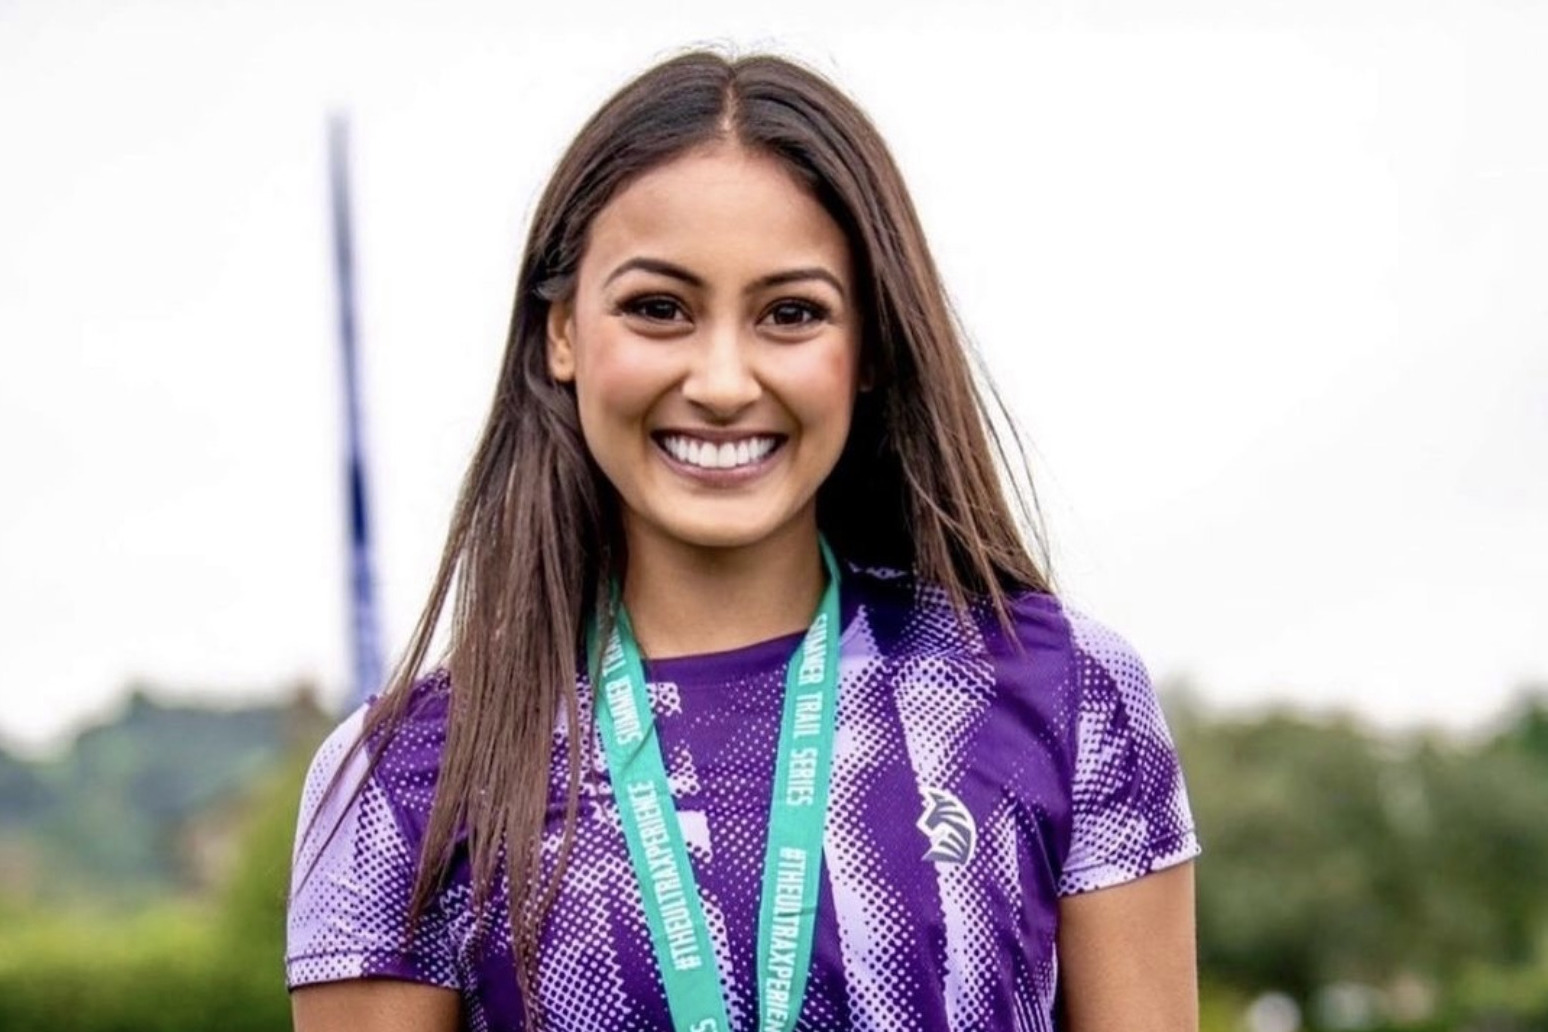 Love Island’s Priya Gopaldas kicks off ultramarathon in support of NHS staff 